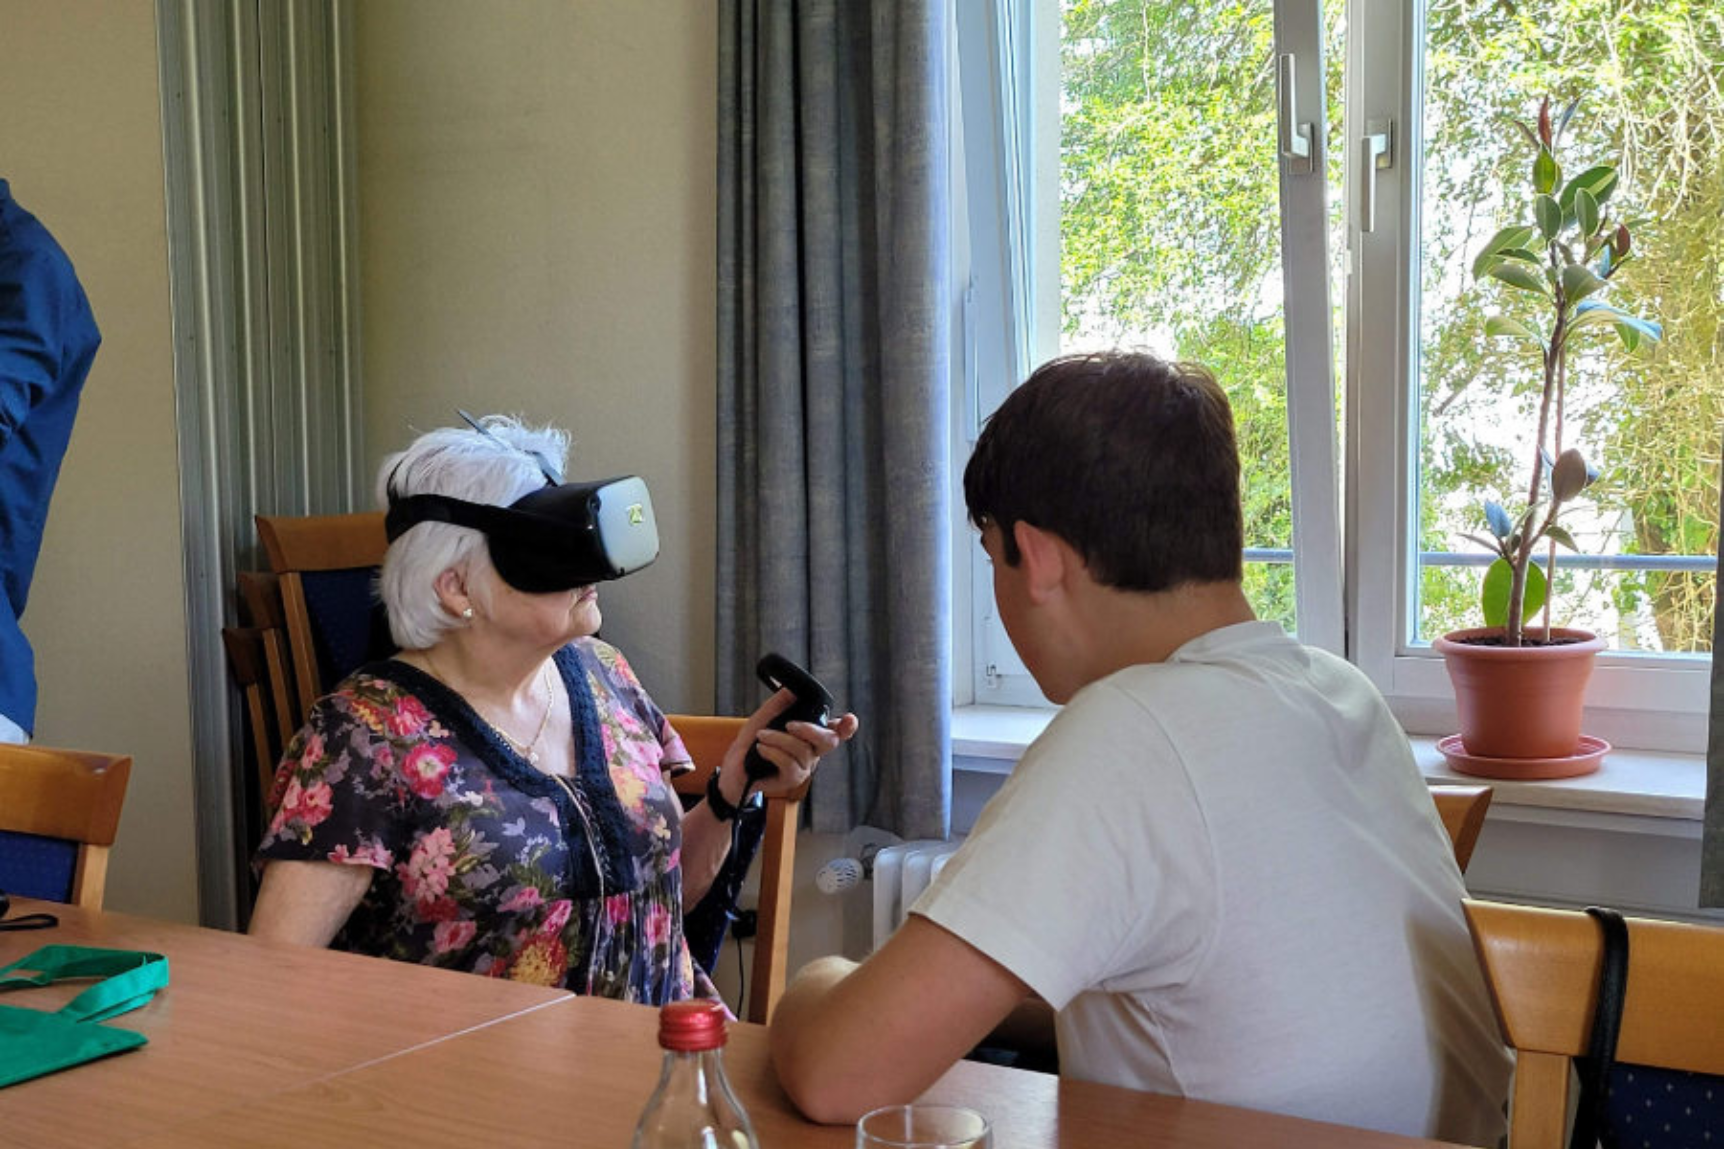 Ältere Frau erlebt Virtual Reality, ein jüngerer Mann sitzt ihr gegenüber